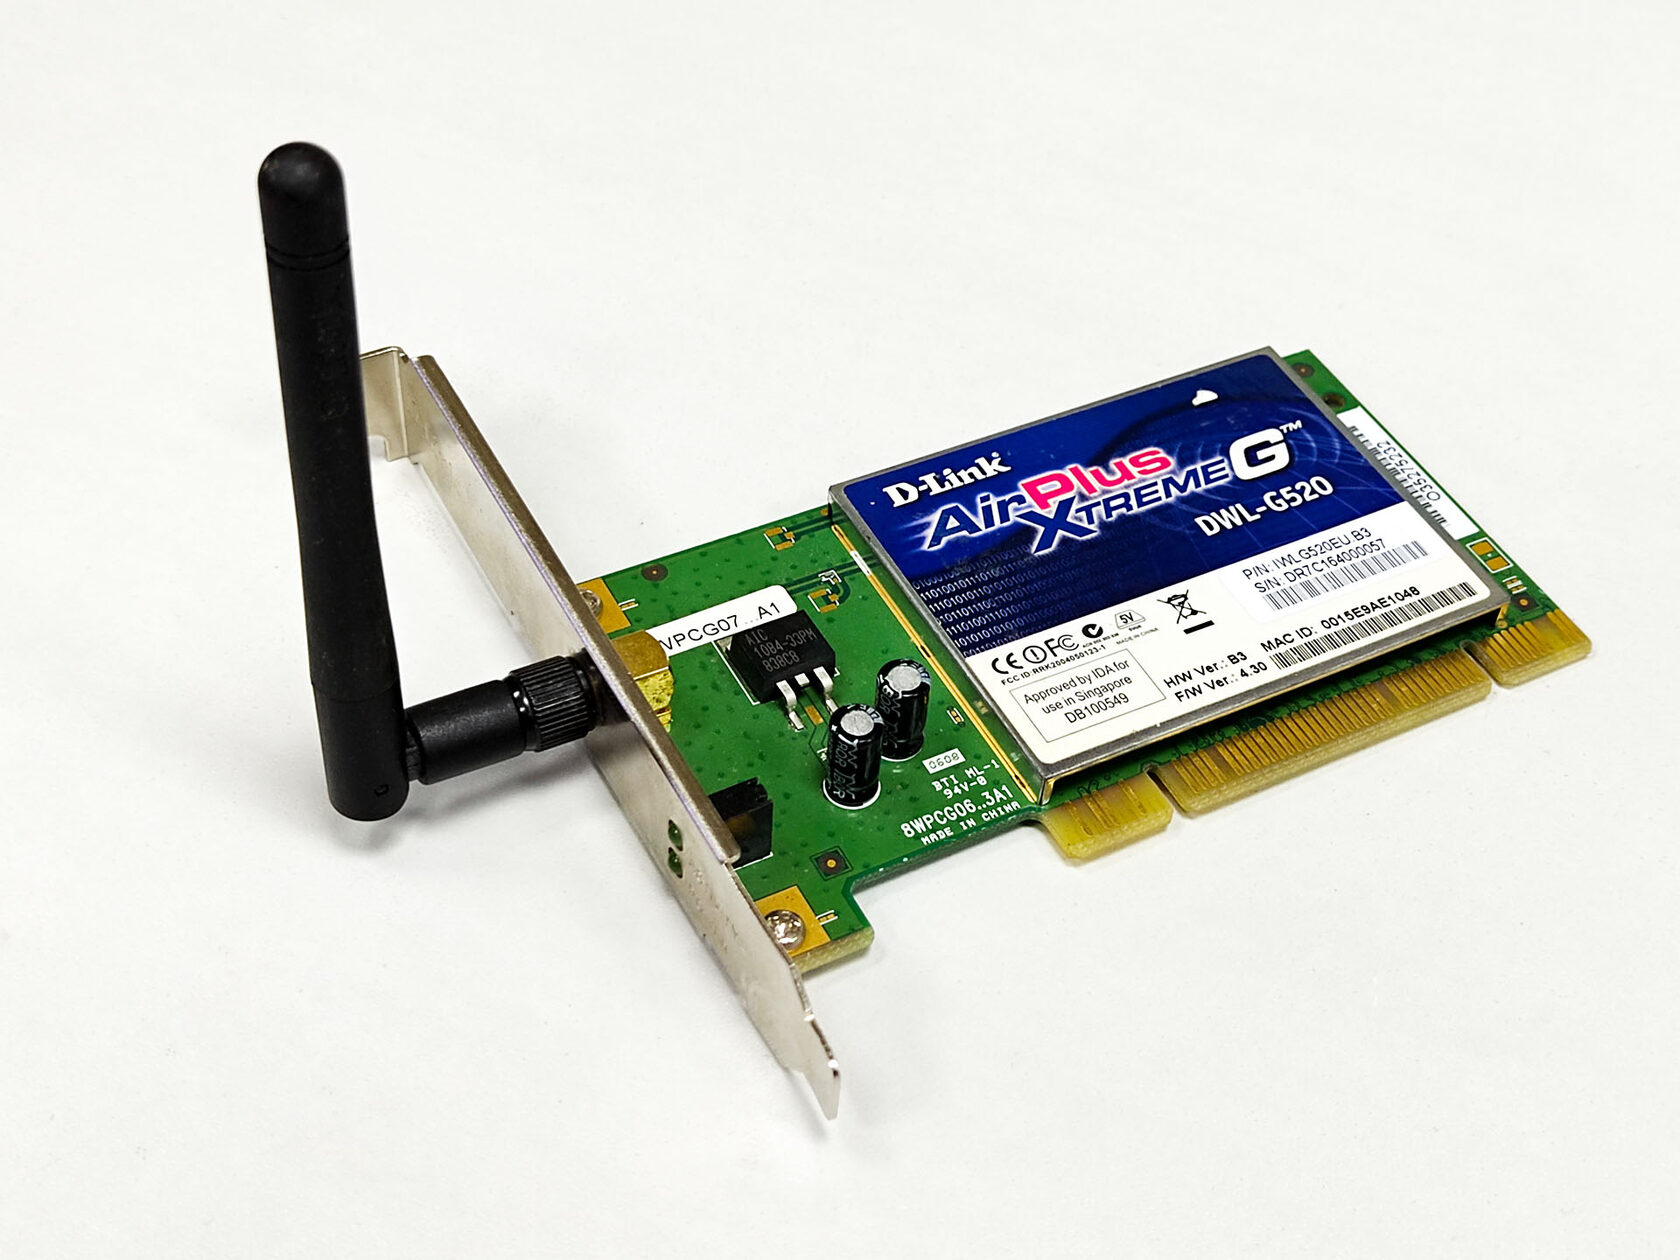 Беспроводный PCI адаптер D-Link AirPlusXtremeG DWL-G520